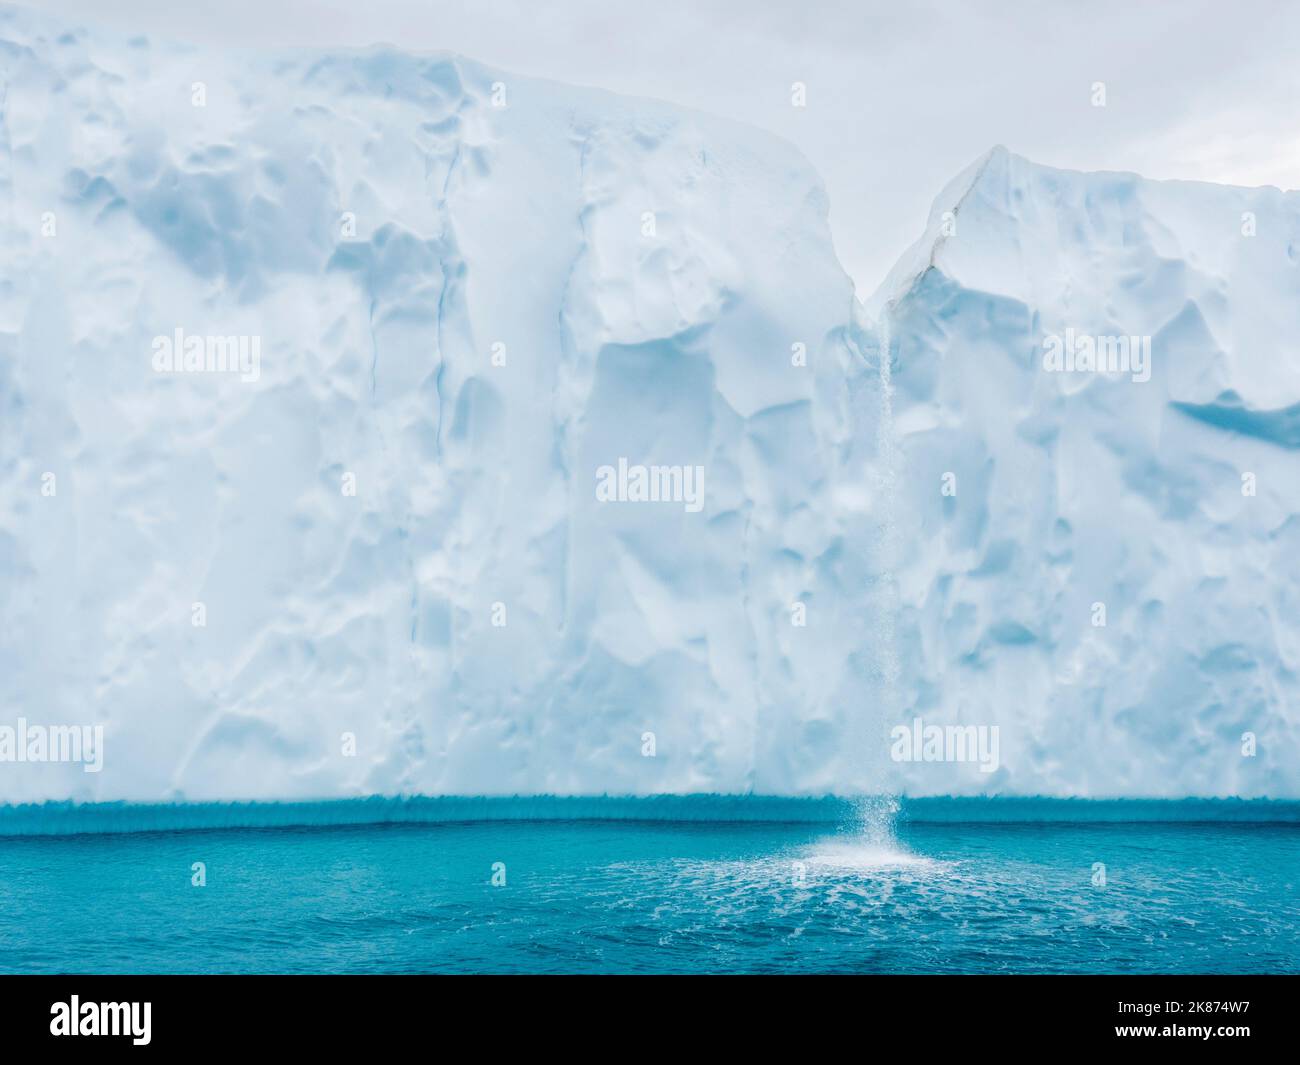 Una cascada de icebergs fundidos del Ilulissat Icefjord justo a las afueras de la ciudad de Ilulissat, Groenlandia, Dinamarca, regiones polares Foto de stock